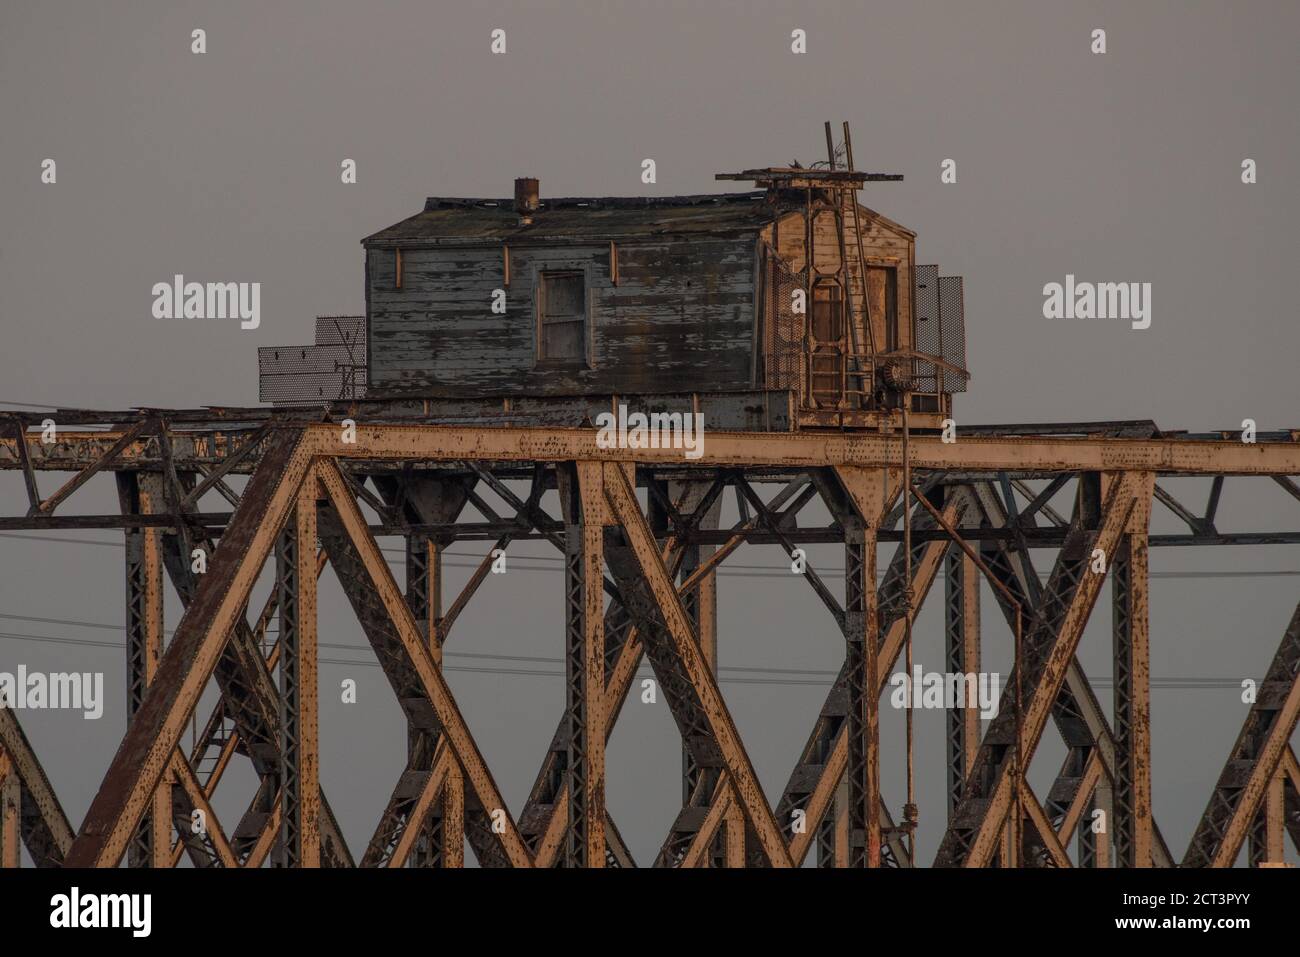 Le pont ferroviaire de Dunbarton est désaffecté et hors service, il était autrefois un pont ferroviaire traversant la baie de San francisco. Banque D'Images